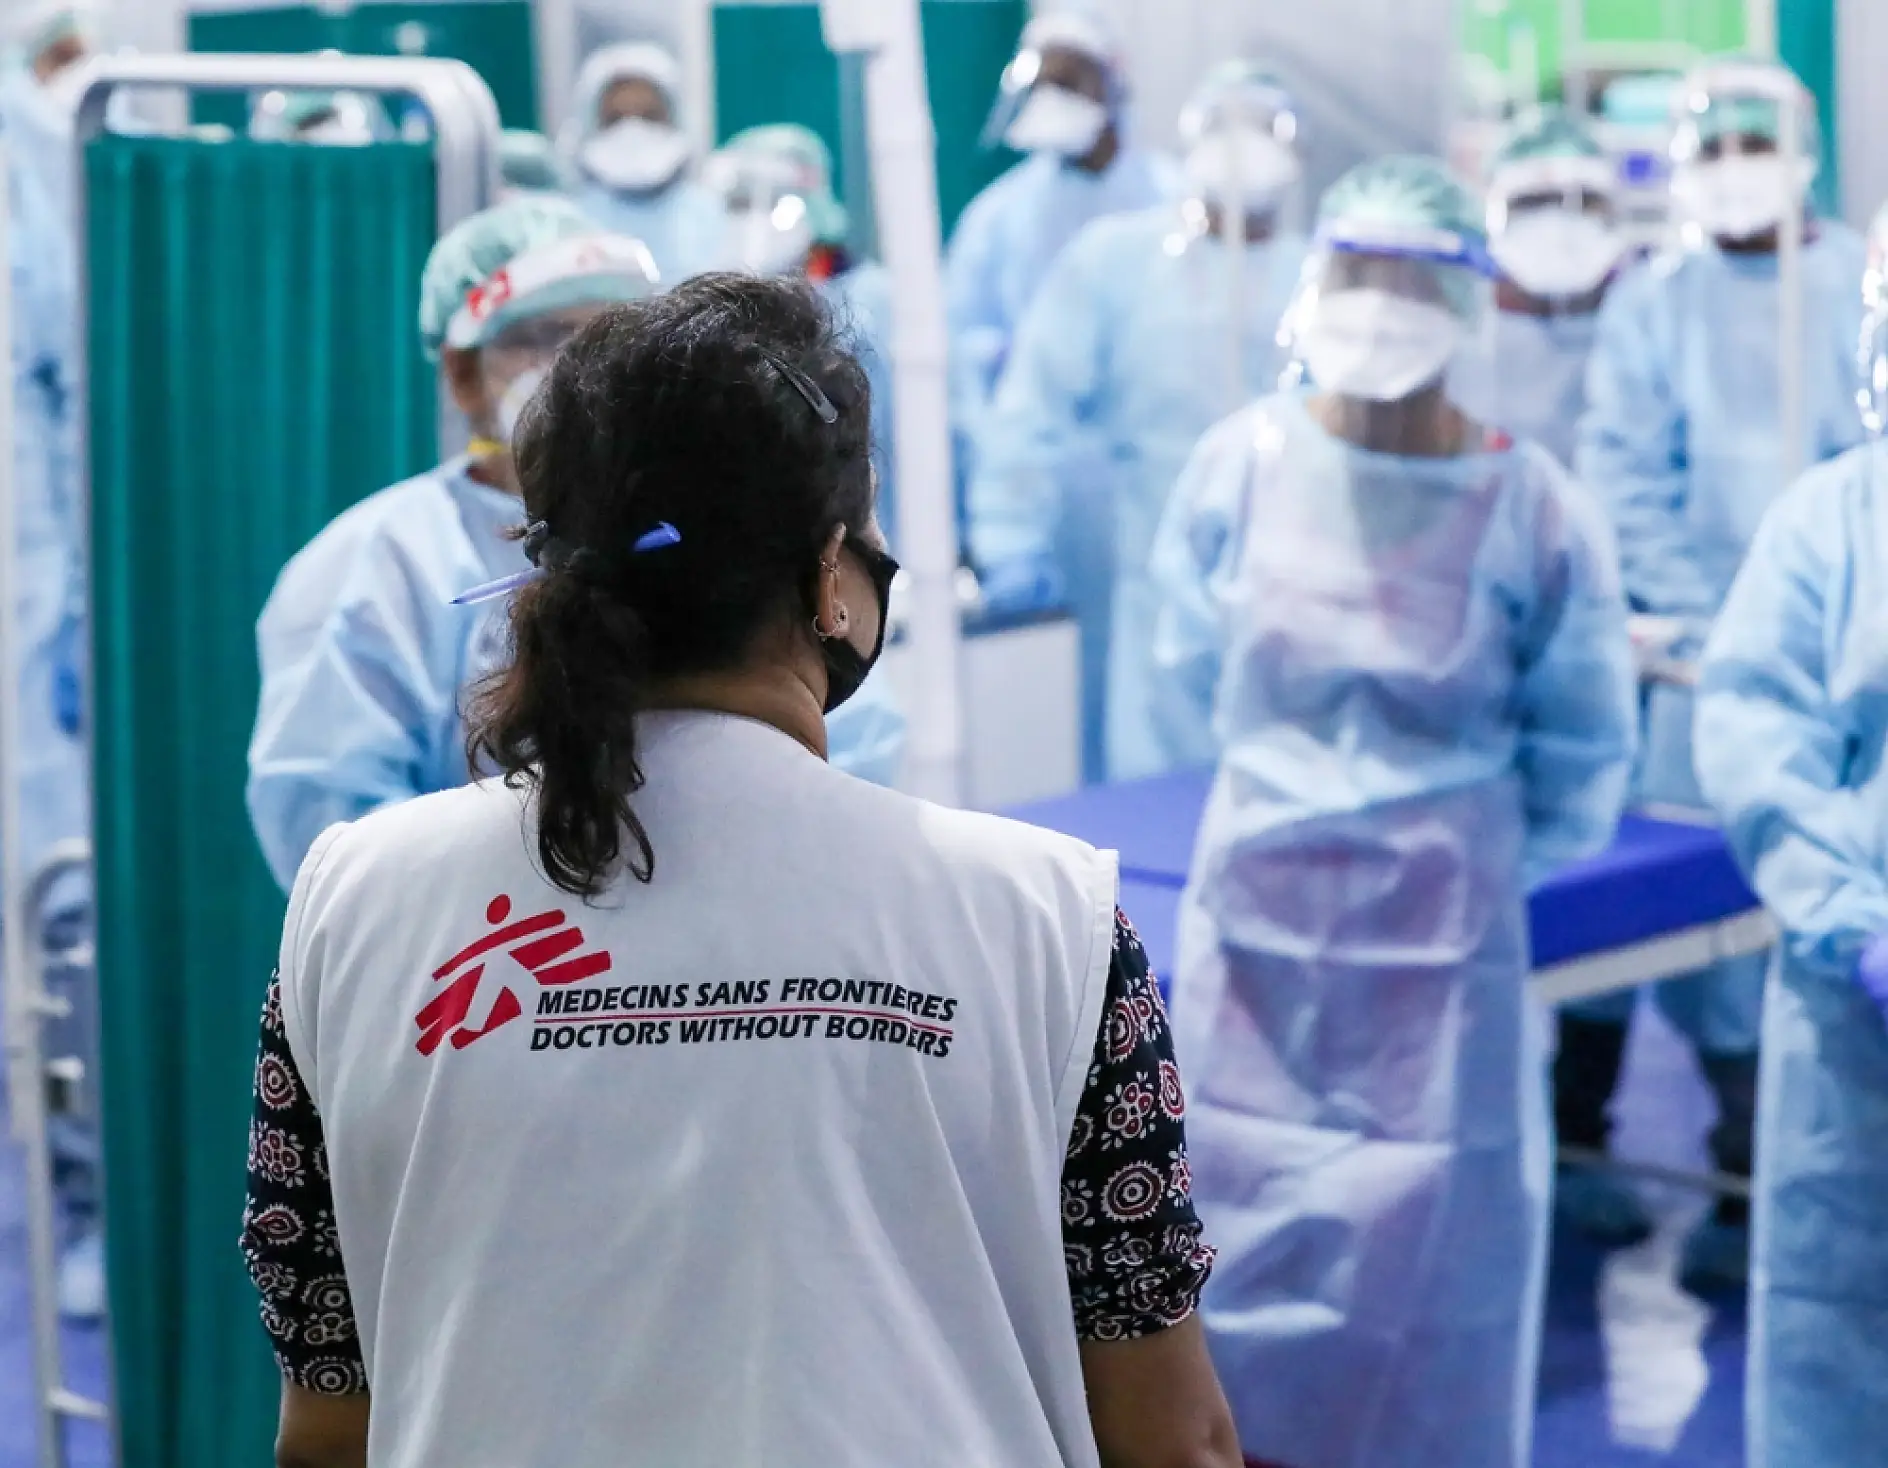 Una de las principales prioridades de MSF es la seguridad de los profesionales sanitarios, motivo por el cual todo el personal ha de seguir estrictos protocolos de seguridad.